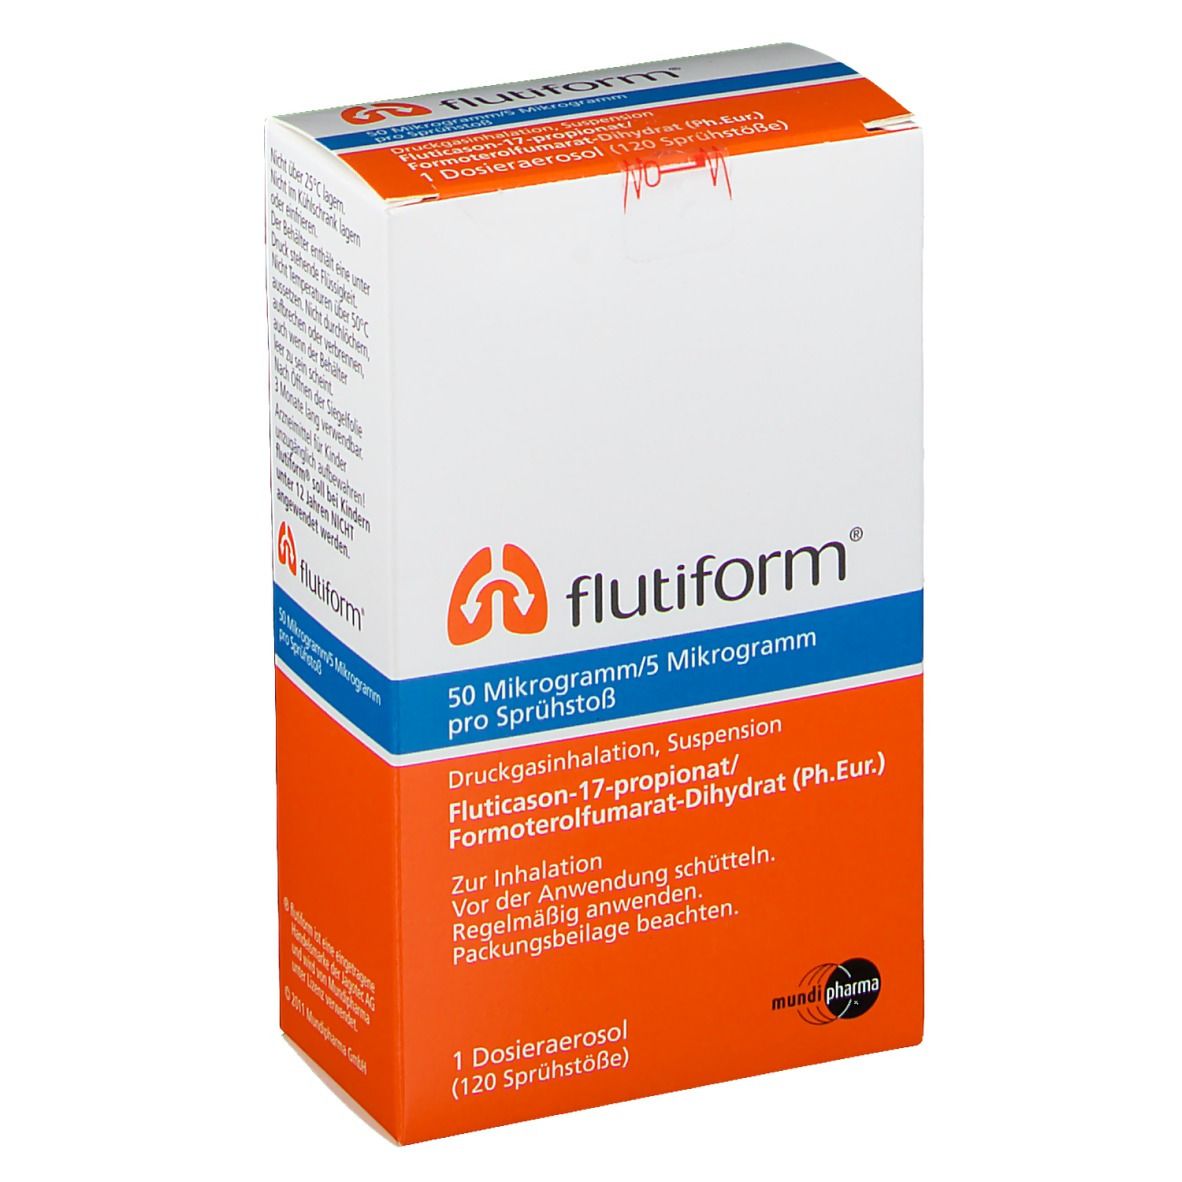 flutiform® 50 µg/5 µg